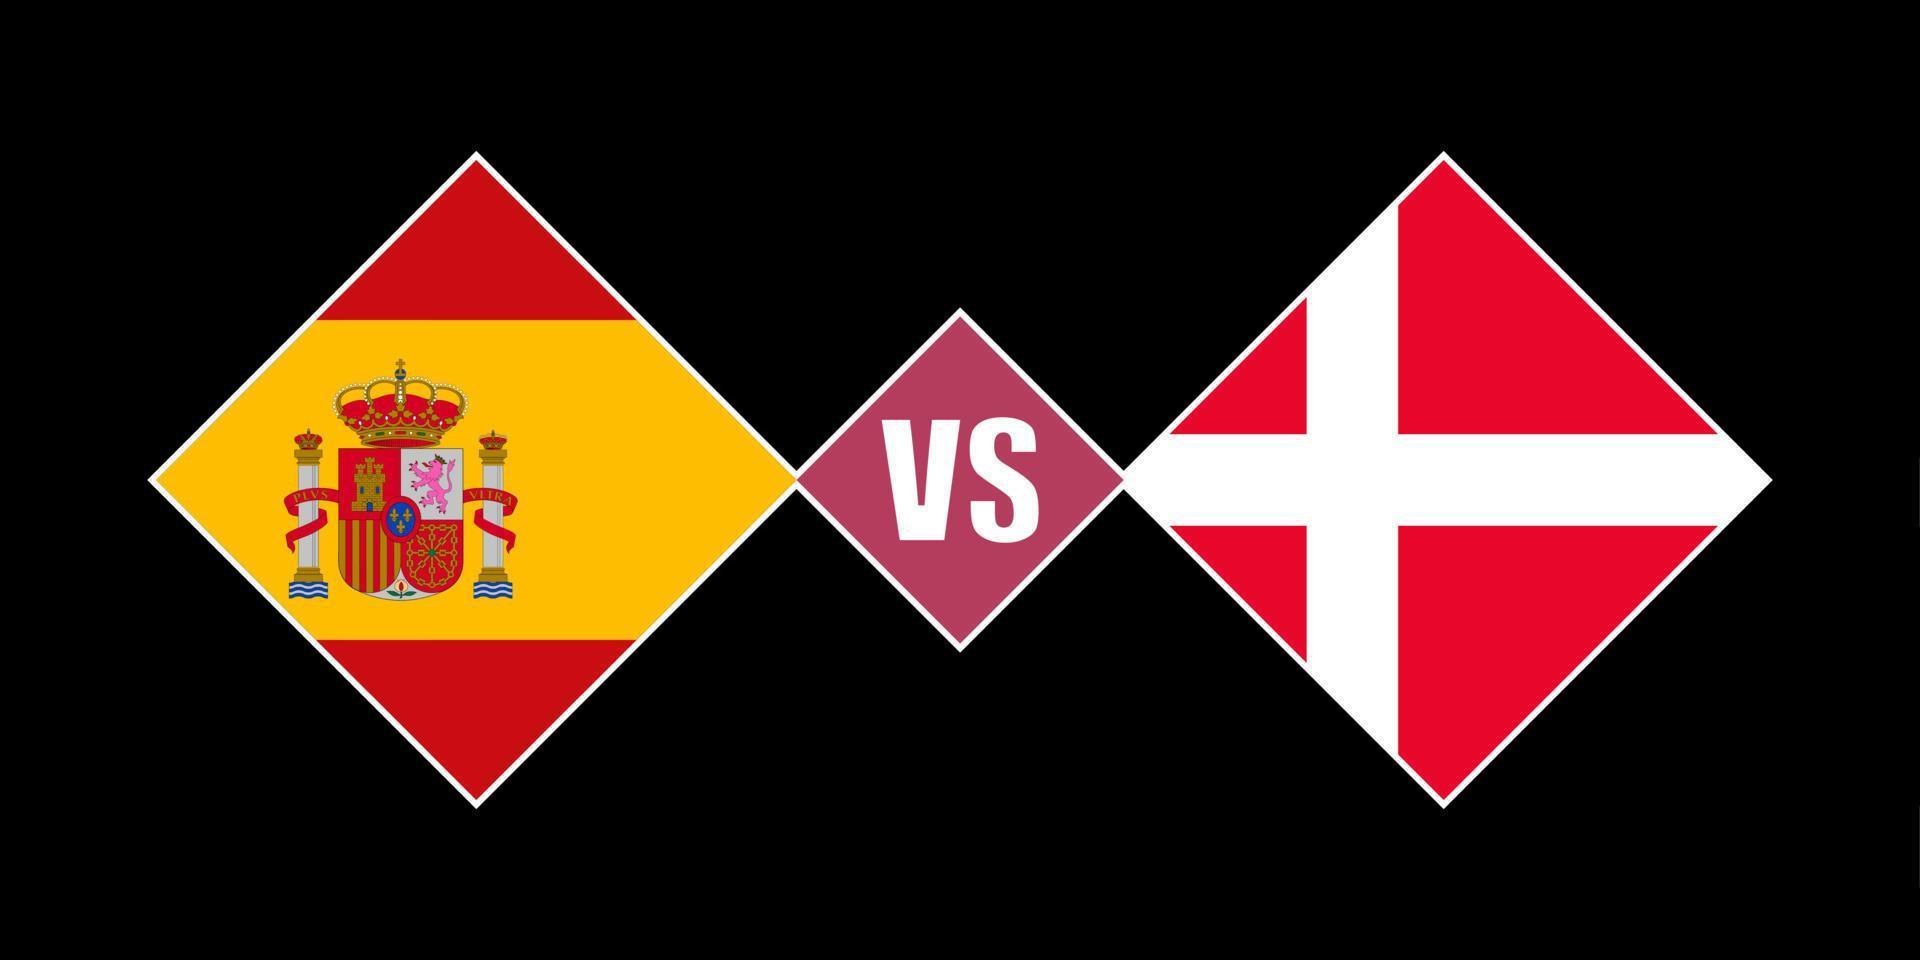 Spain vs Denmark flag concept. Vector illustration.